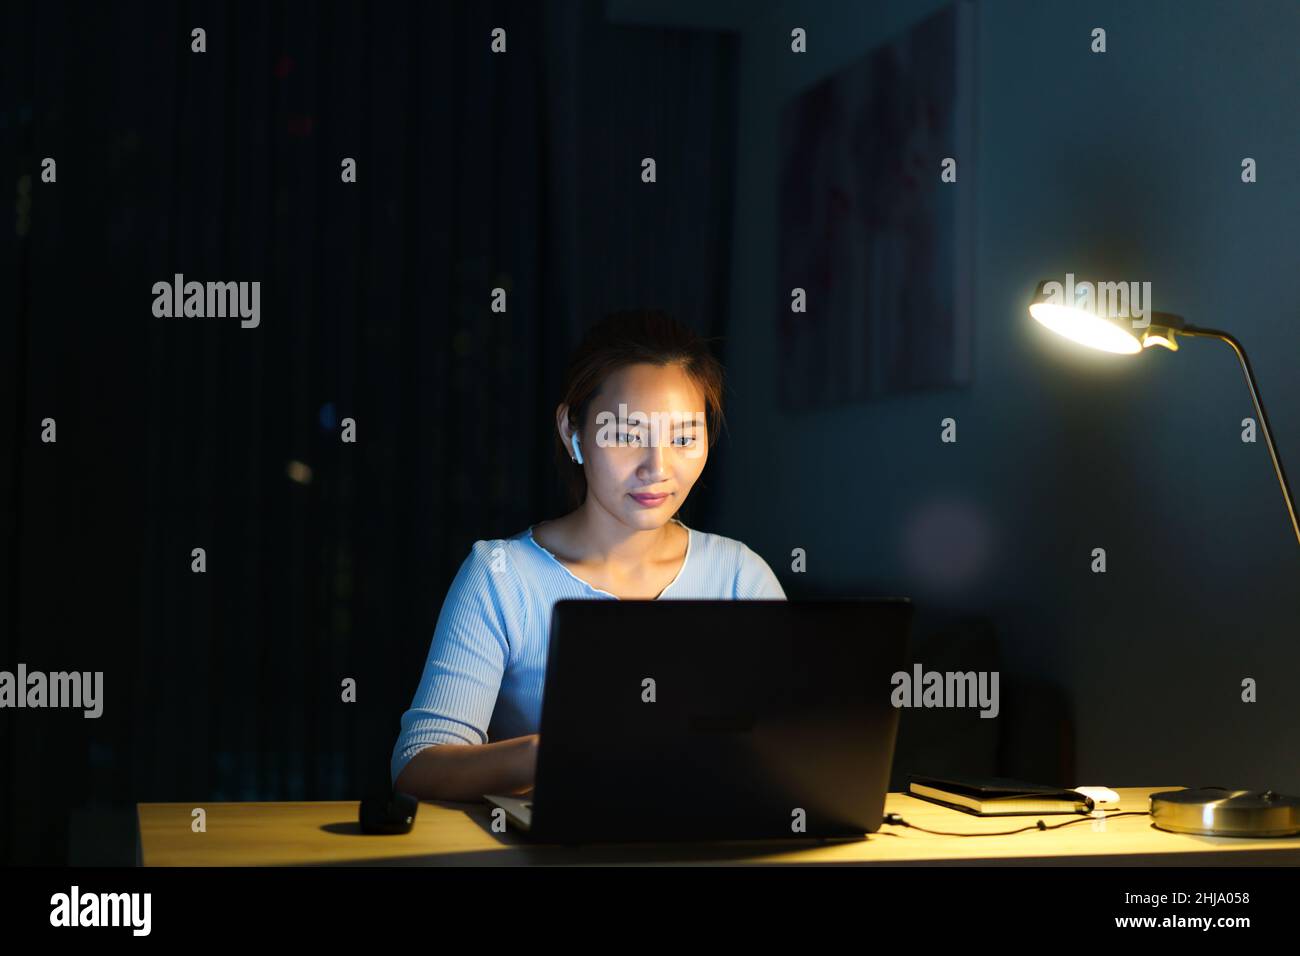 Les femmes asiatiques qui travaillent à la maison sont assises au travail avec leurs collègues ou leurs responsables par appel vidéo la nuit à la maison. Banque D'Images